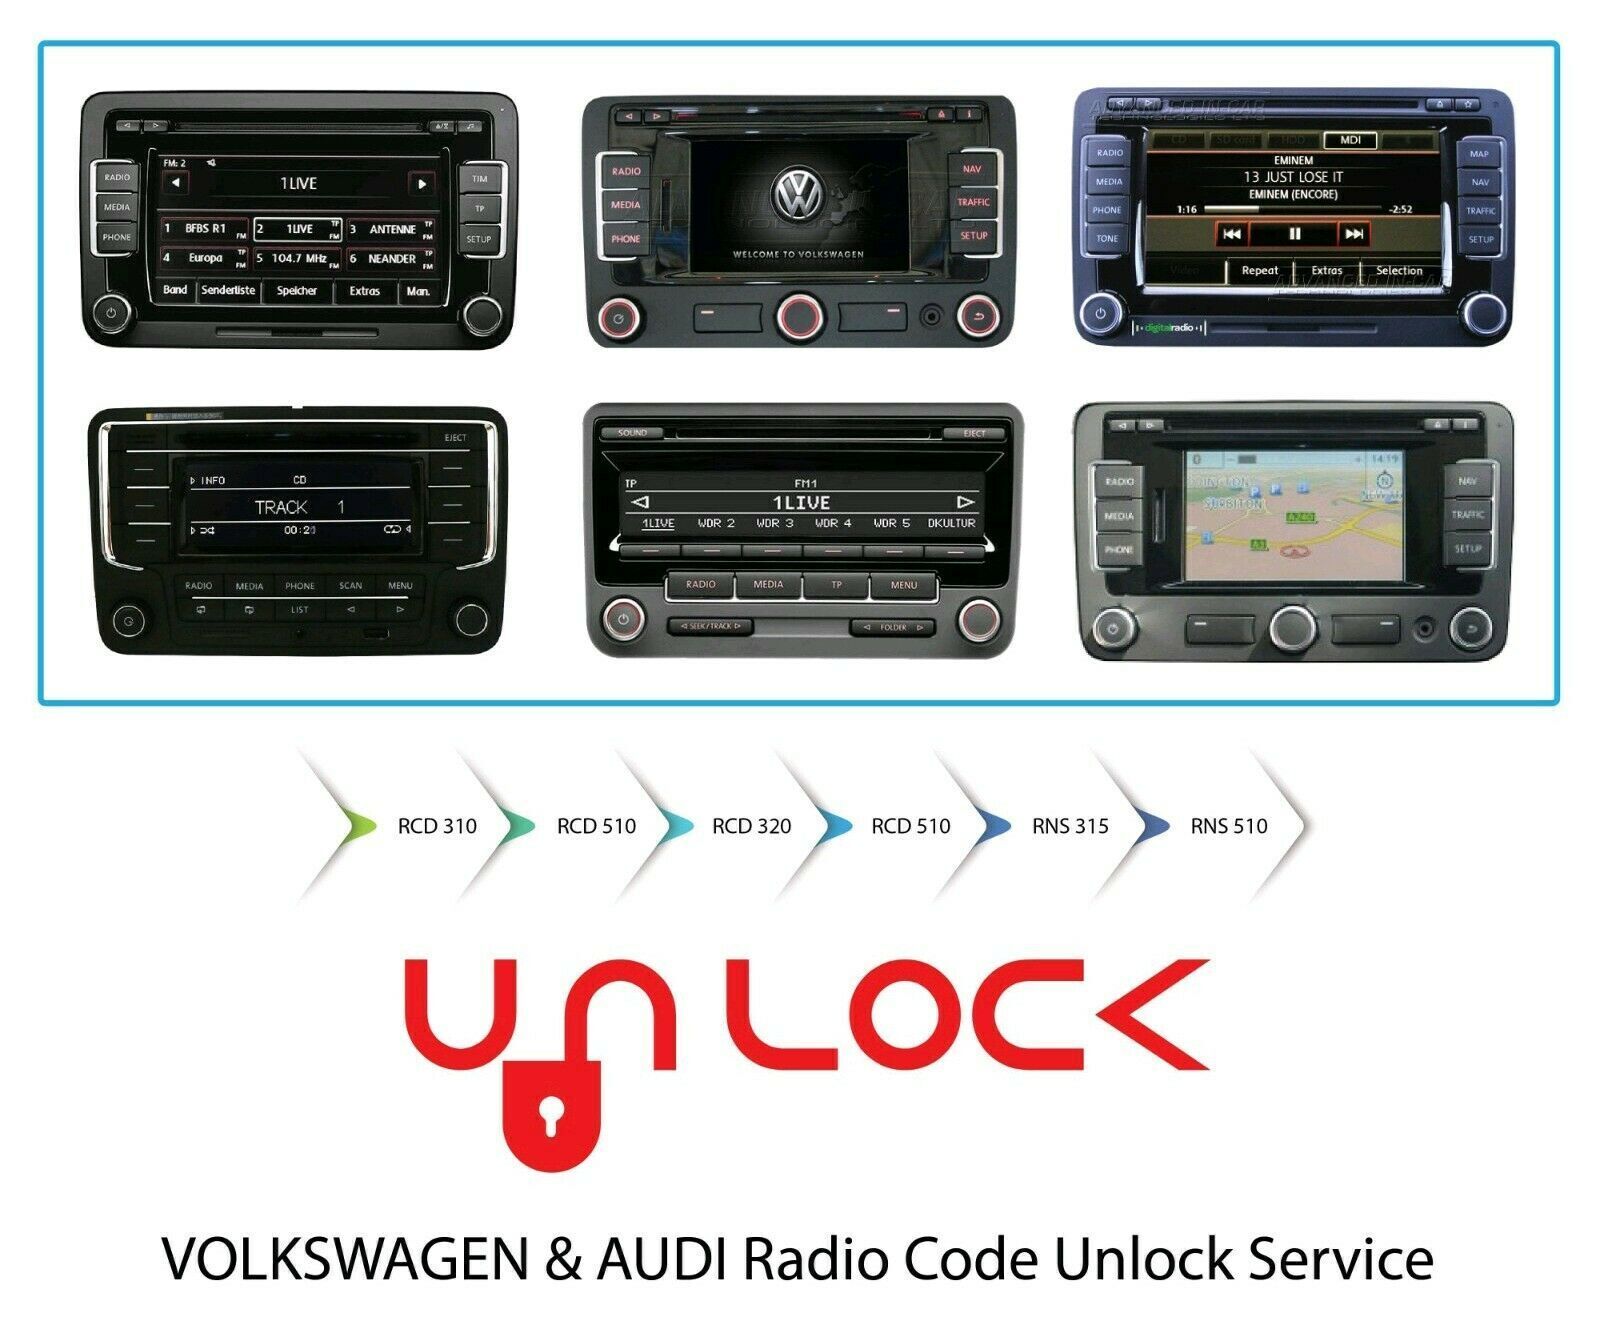 VW AUDI Radio Code, Volkswagen radio Unlock Service PIN code Decode.